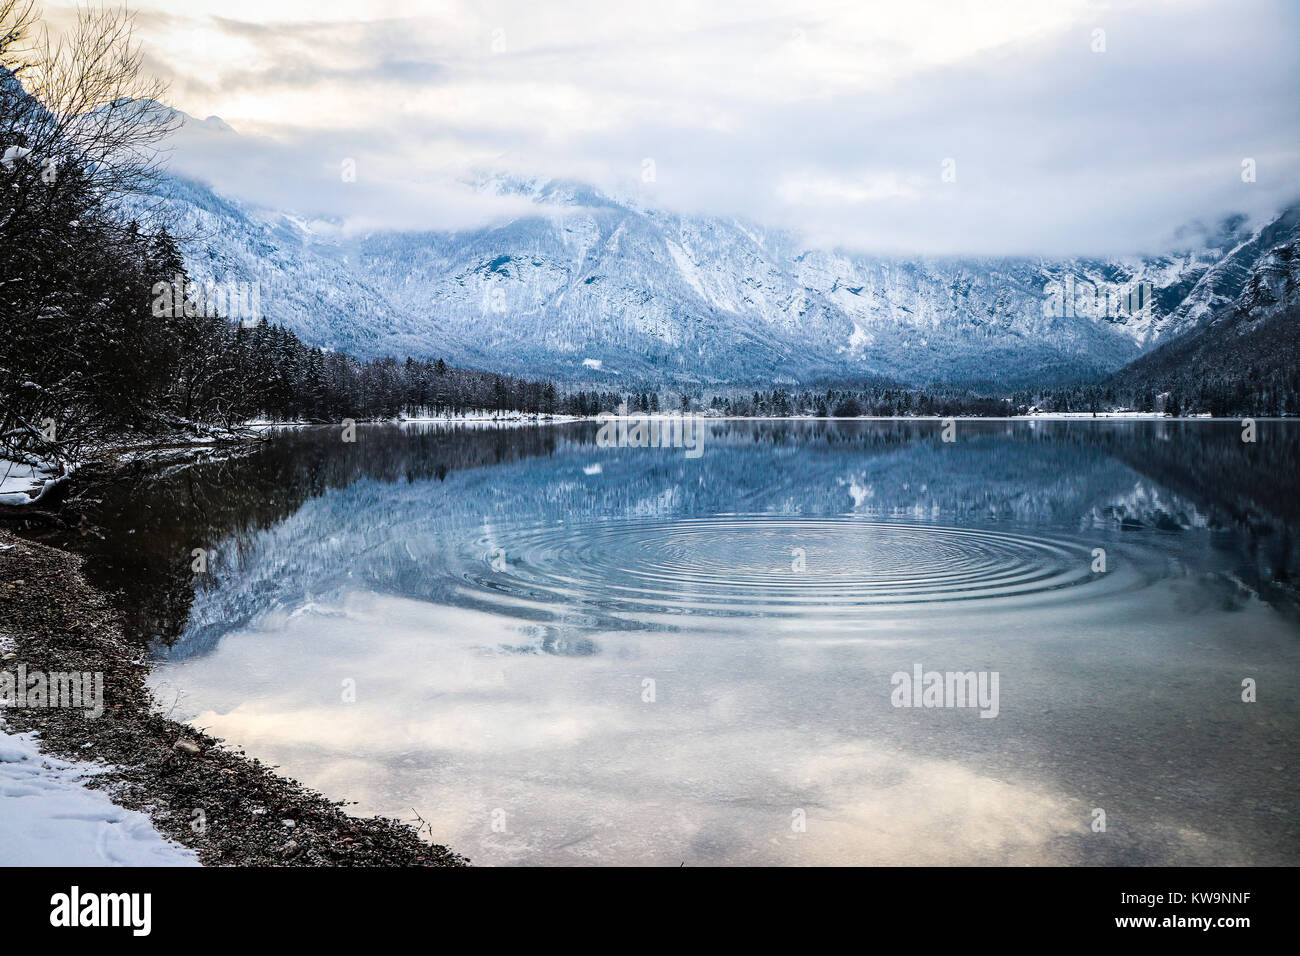 L'étonnante sérénité du lac de Bohinj, en Slovénie, est capturée dans cette image merveilleuse, parfaite pour orner le front d'une carte de Noël ou une carte postale. Banque D'Images